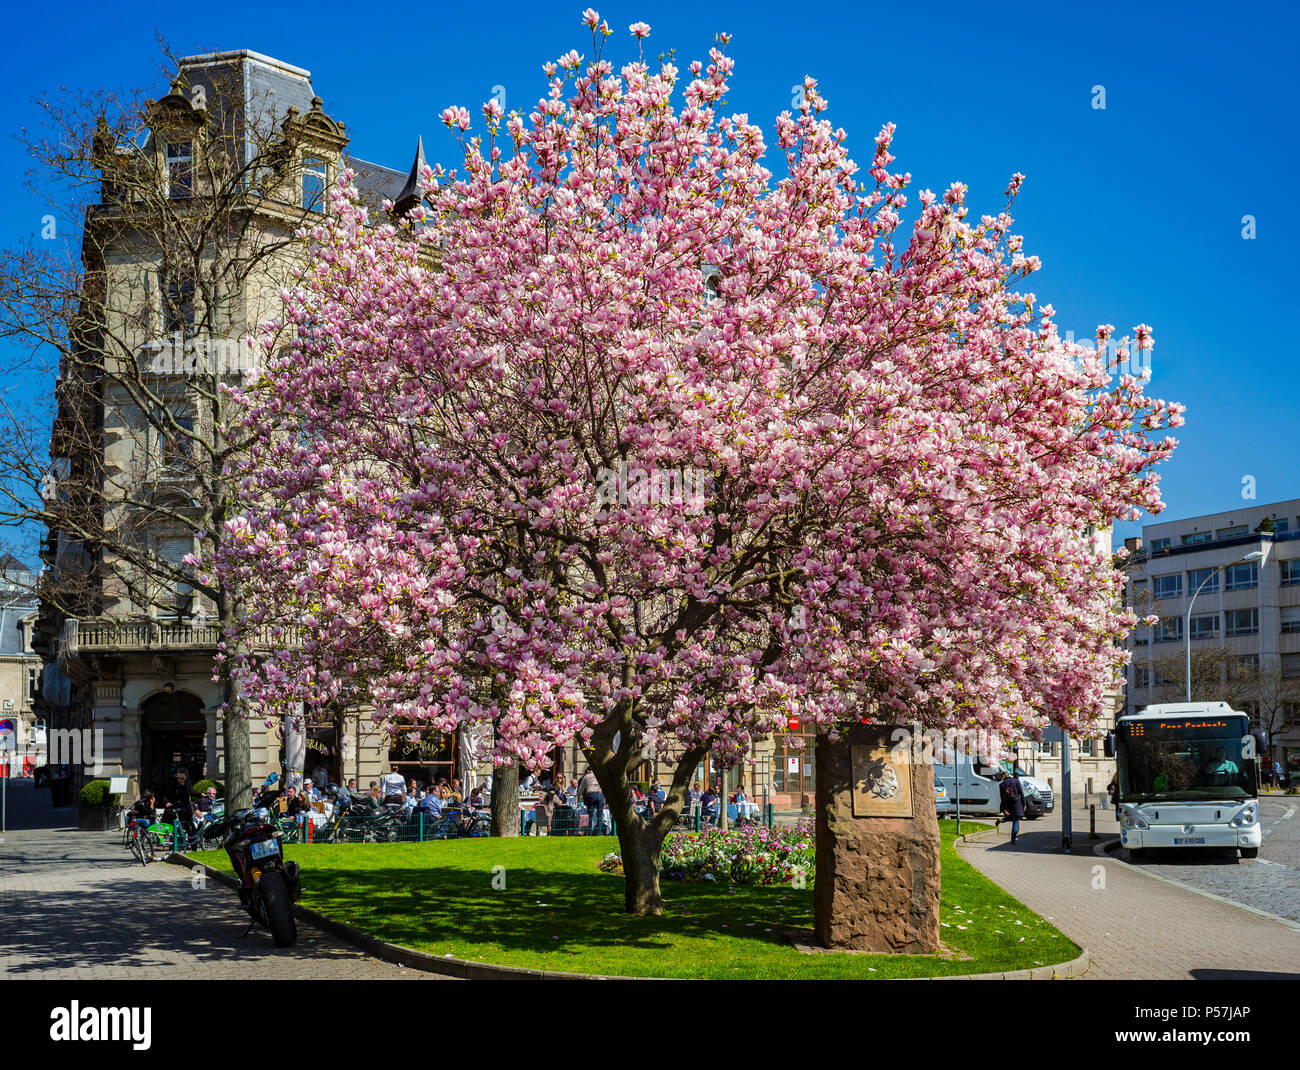 Straßburg, Marcel Rudloff Platz mit blühenden Magnolienbaum und Cafe Brent, Elsass, Frankreich, Europa, Stockfoto